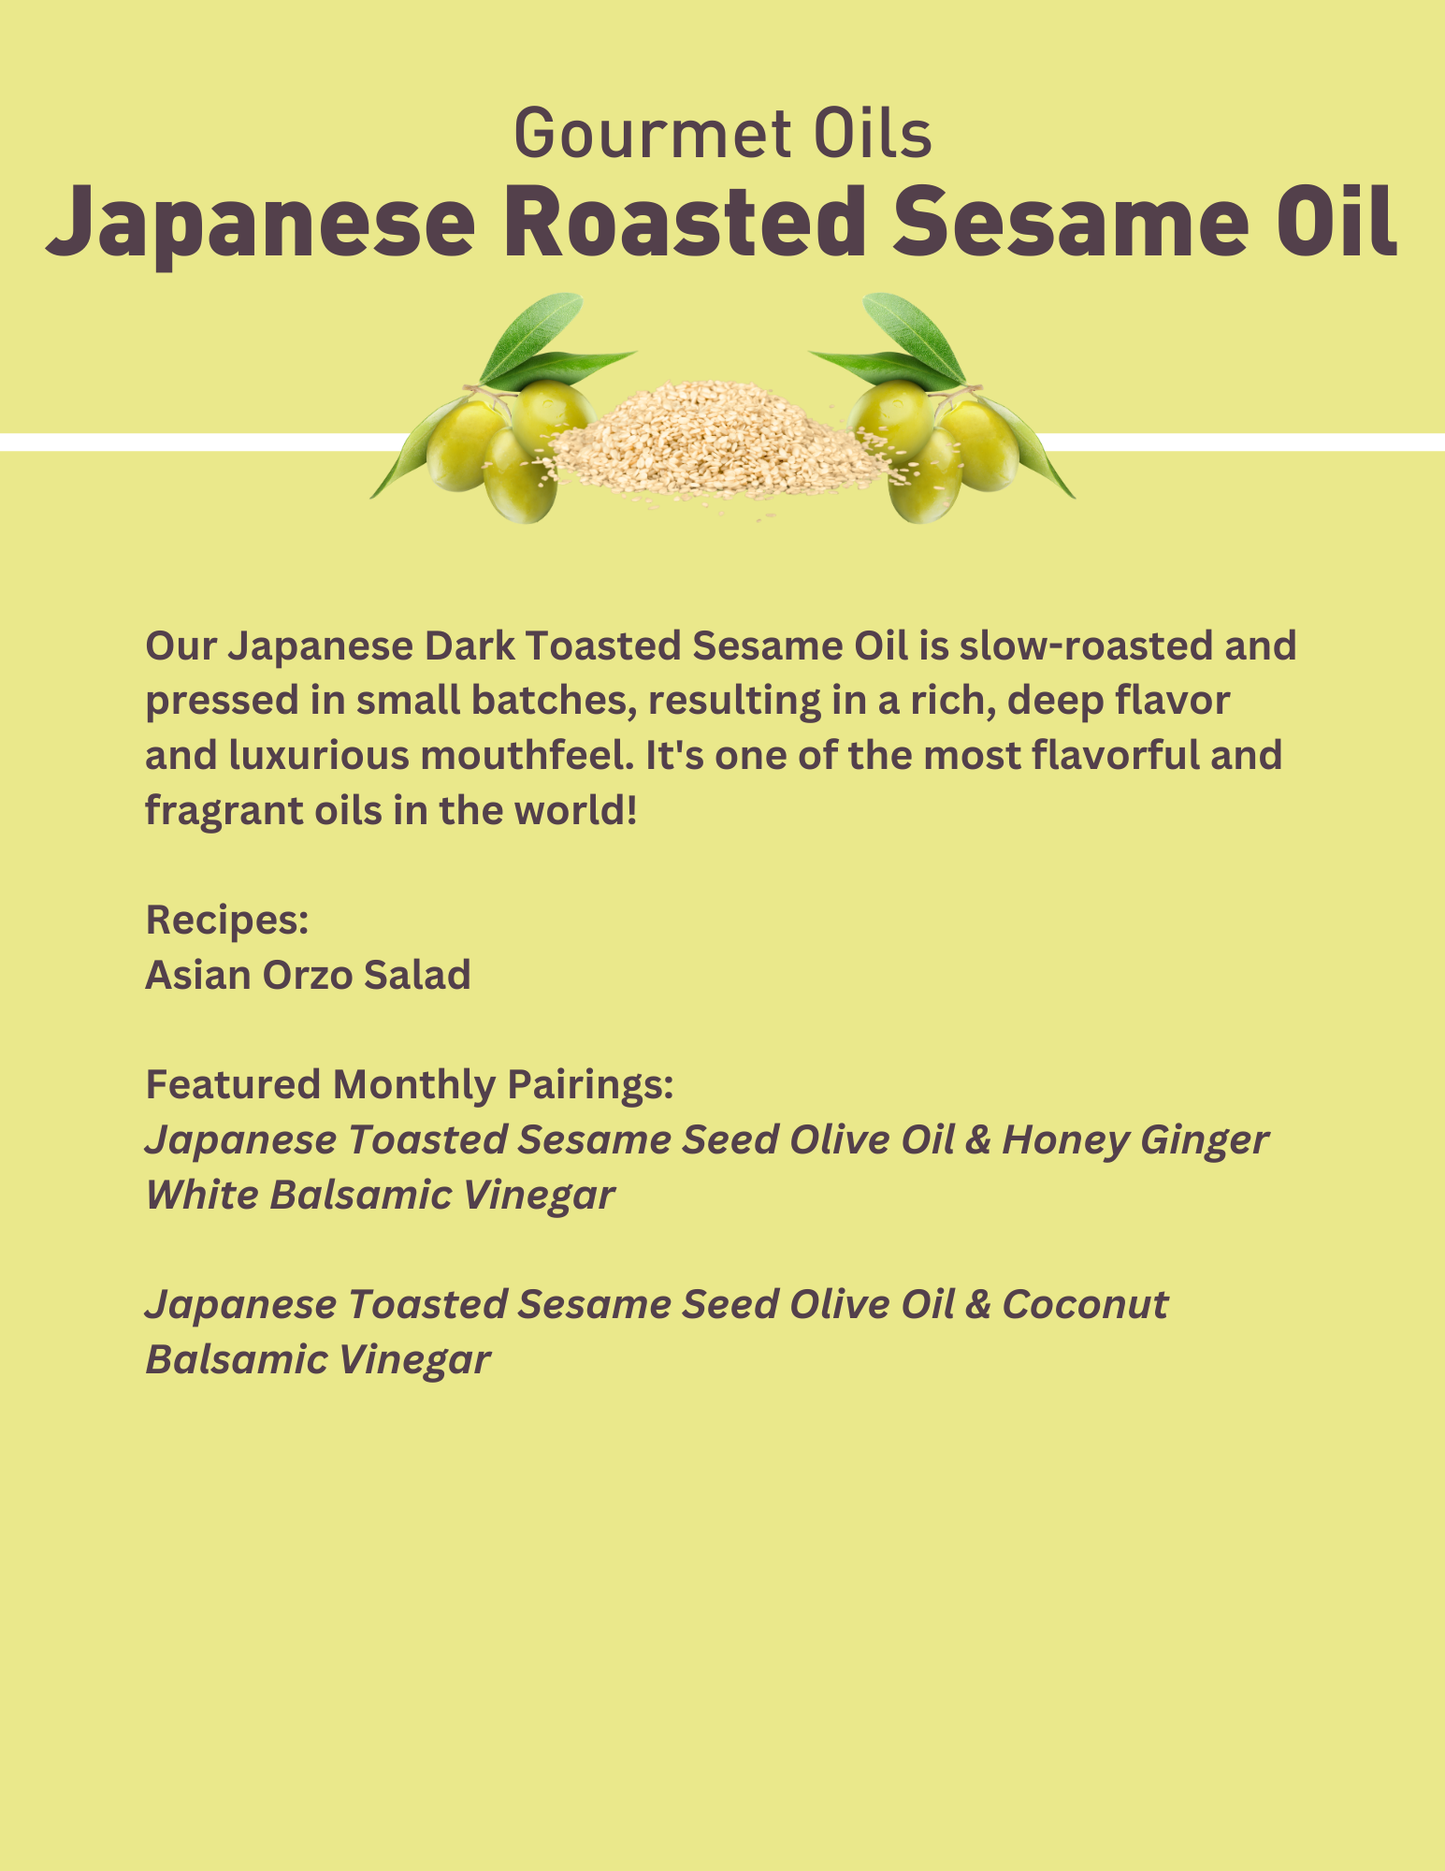 Japanese Roasted Sesame Oil